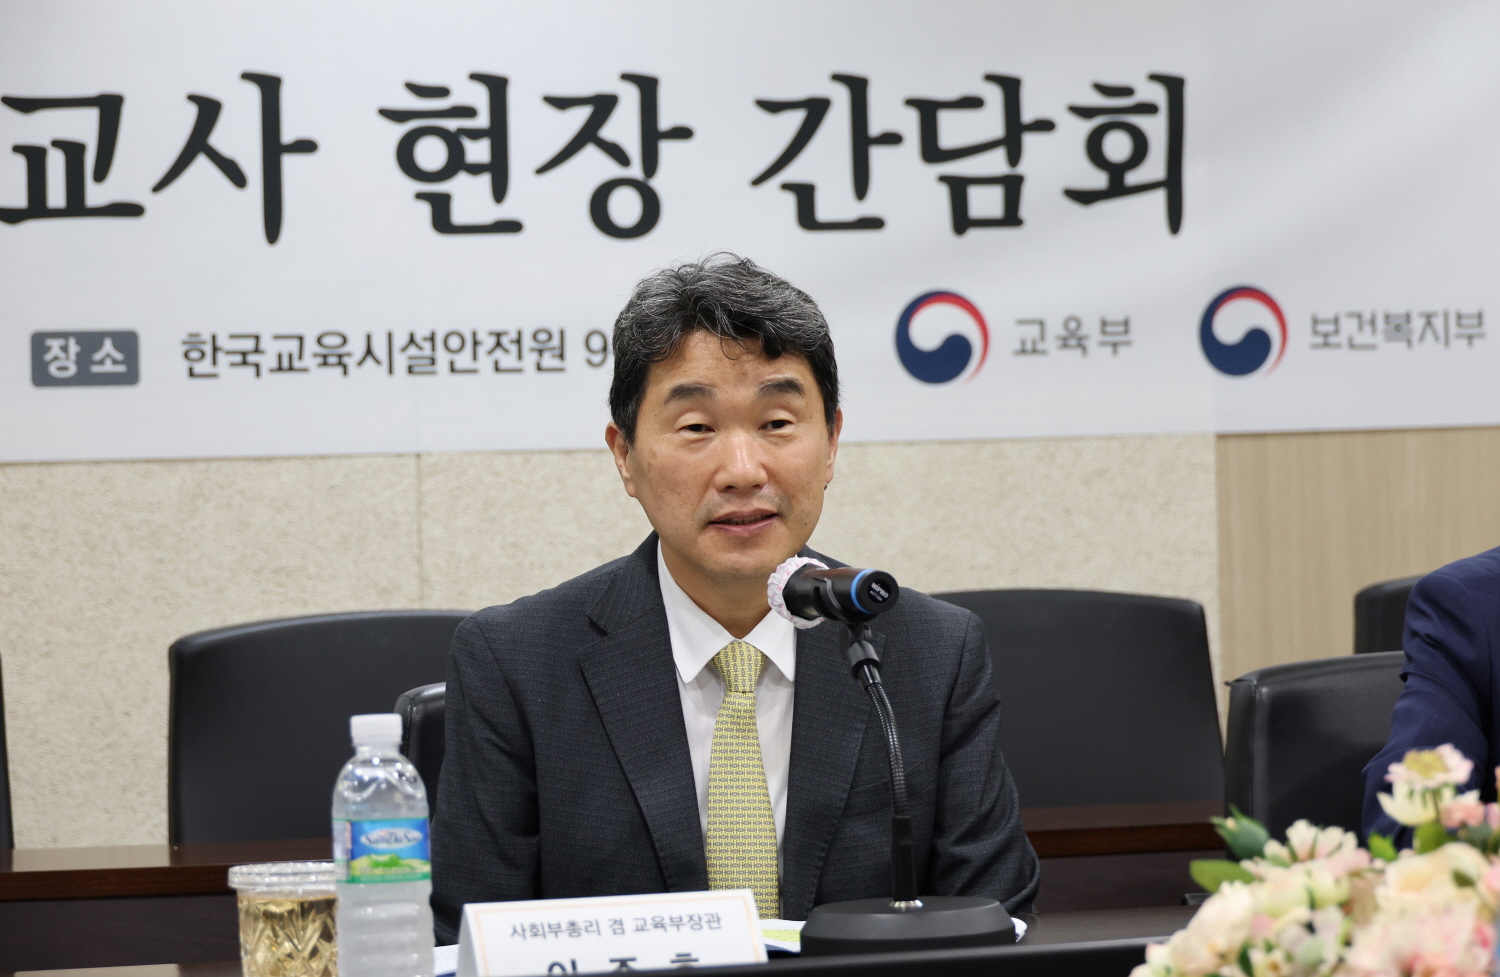 이주호 부총리 겸 교육부장관은 8월 11일(금), 한국교육시설안전원에서 어린이집 교사의 보육활동 보호를 위한 현장 간담회에 참석했다.